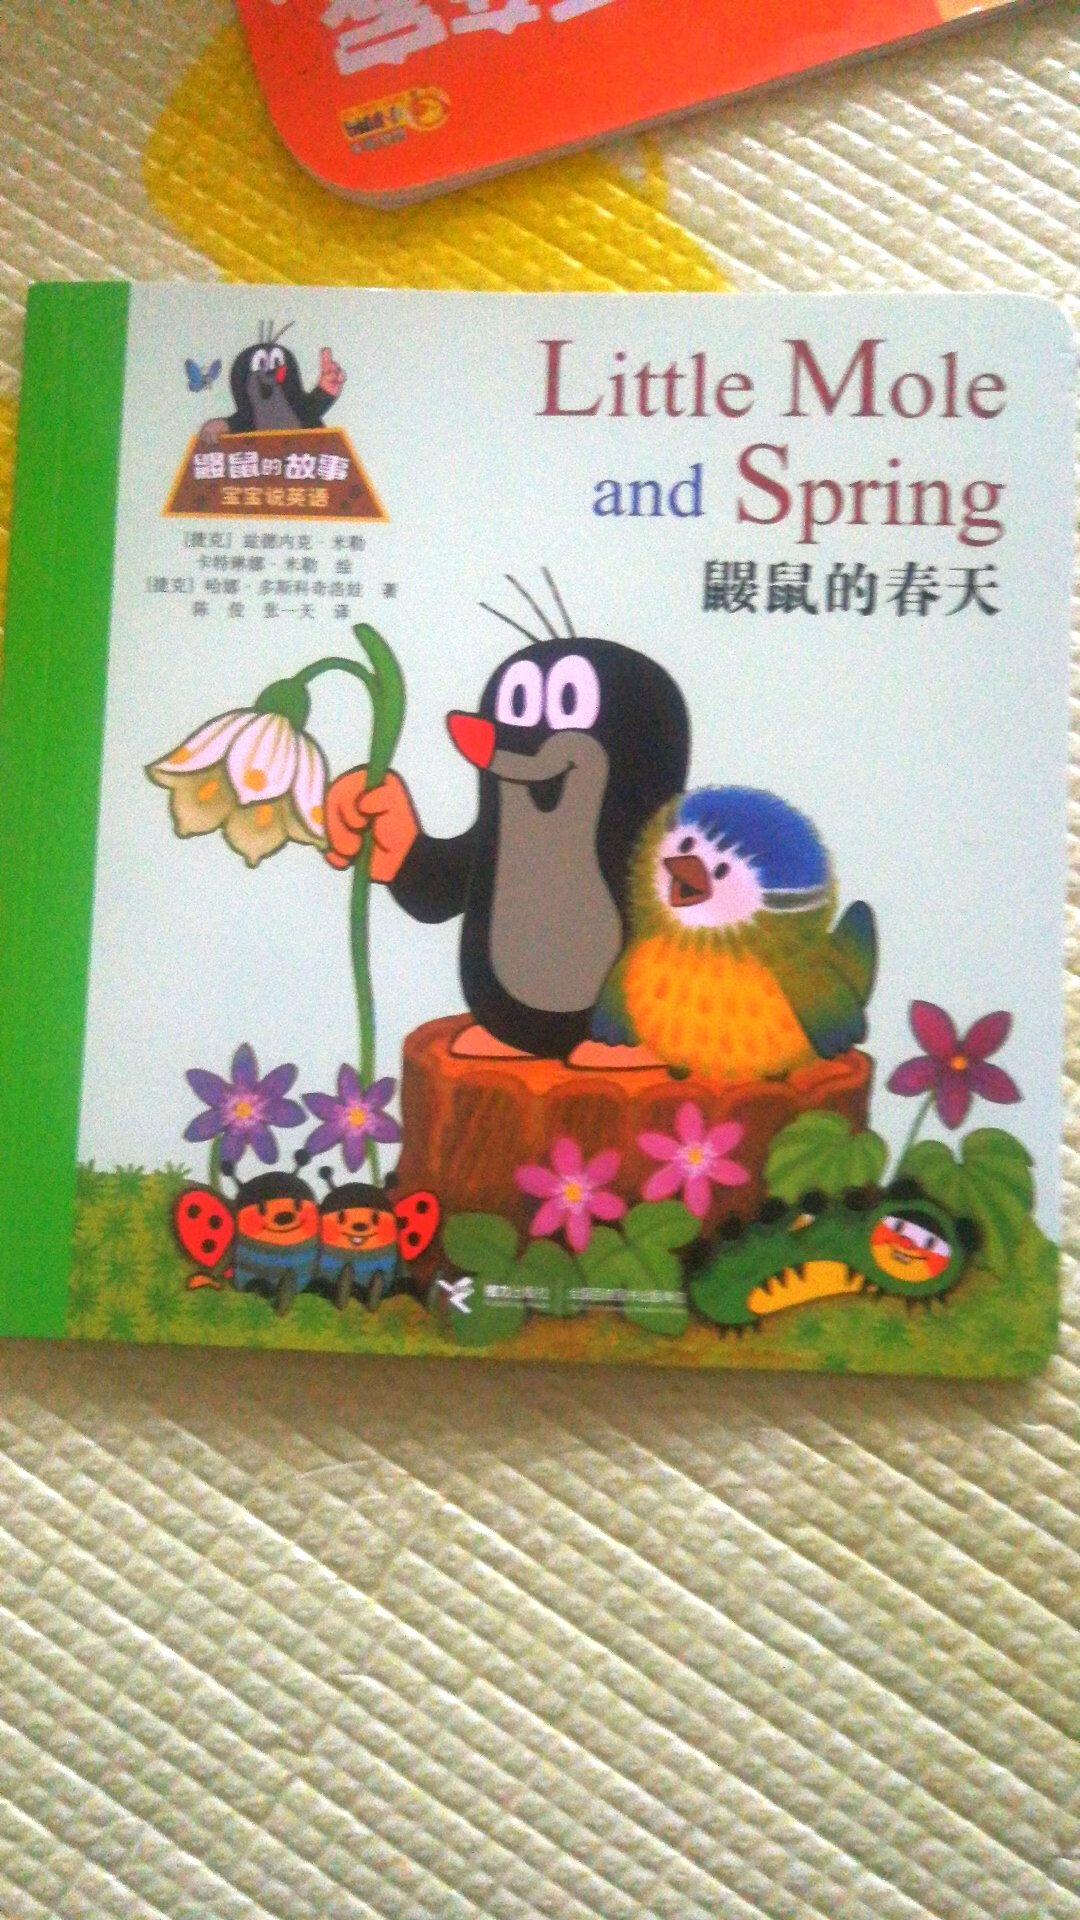 鼹鼠的这套书小朋友很喜欢，有中文有英语，很好的启蒙教材，睡前找一本翻翻，以后回忆起来感觉一定很棒。